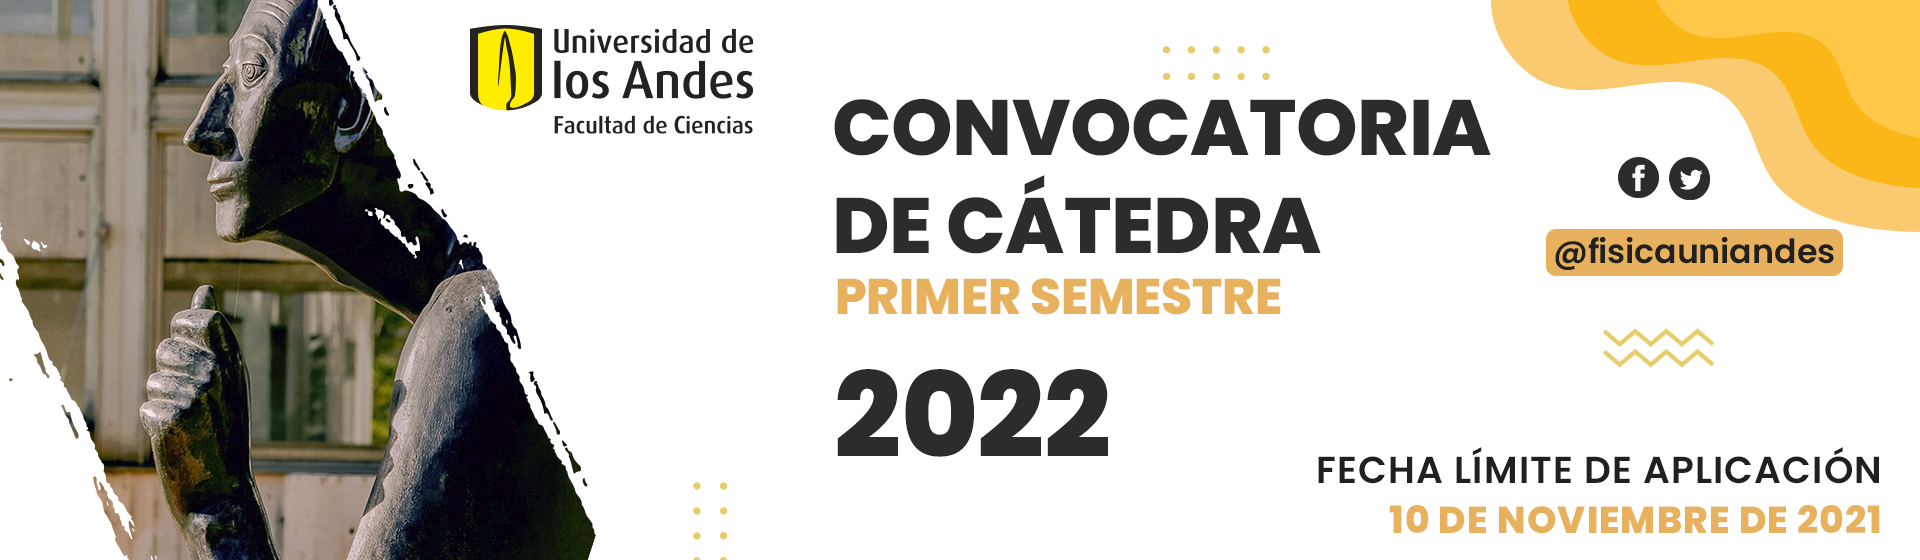 Convocatoria Cátedra 2022-1